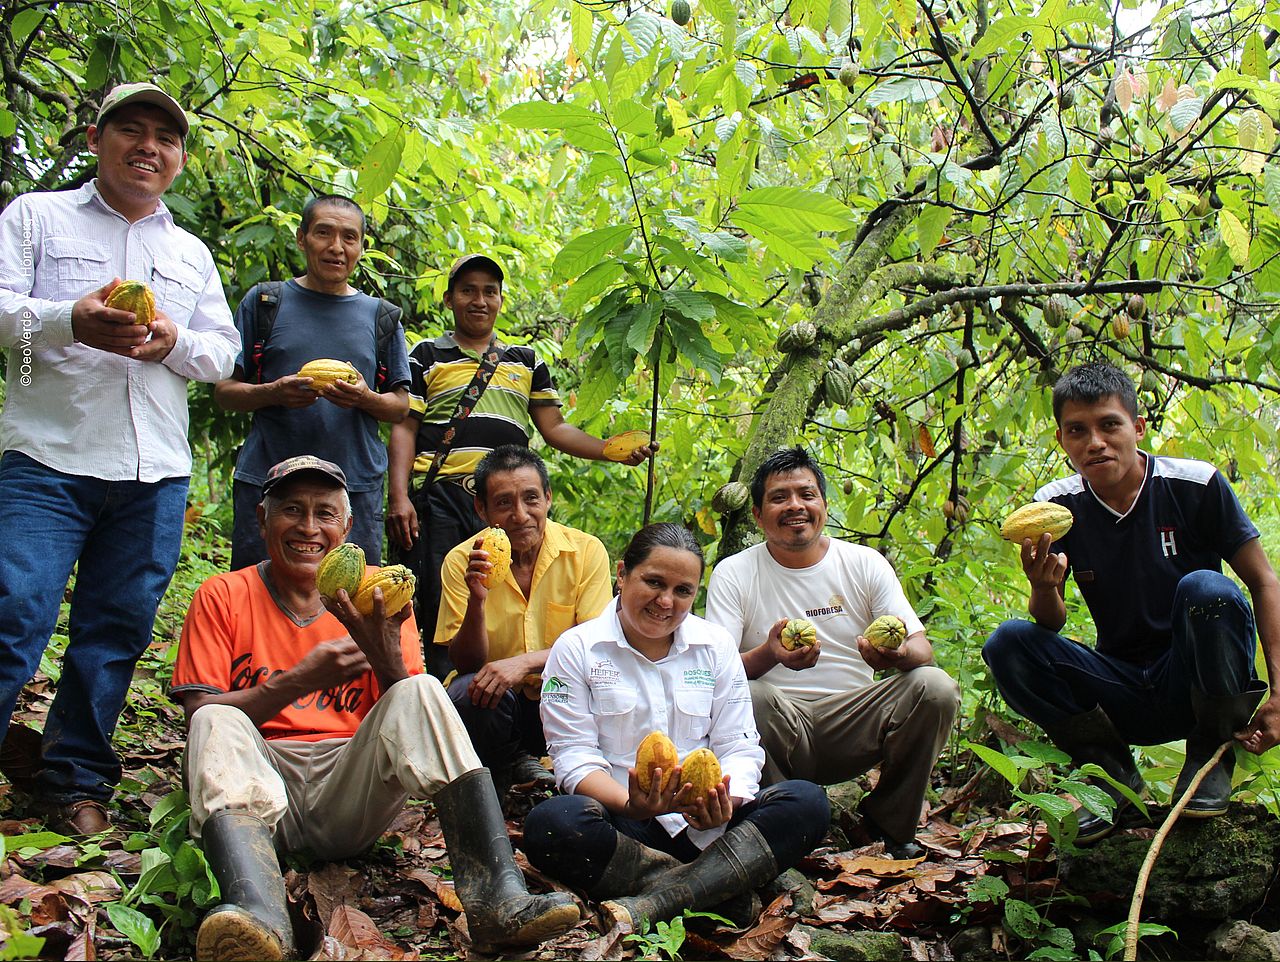 Kakaoernte im Agroforst/ Regenwald. Sie sind besonders widerstandsfähig und liefern über Jahrzehnte verlässlich Ernten und Einkommen für die Familien. ©OroVerde/ Anna Hömberg